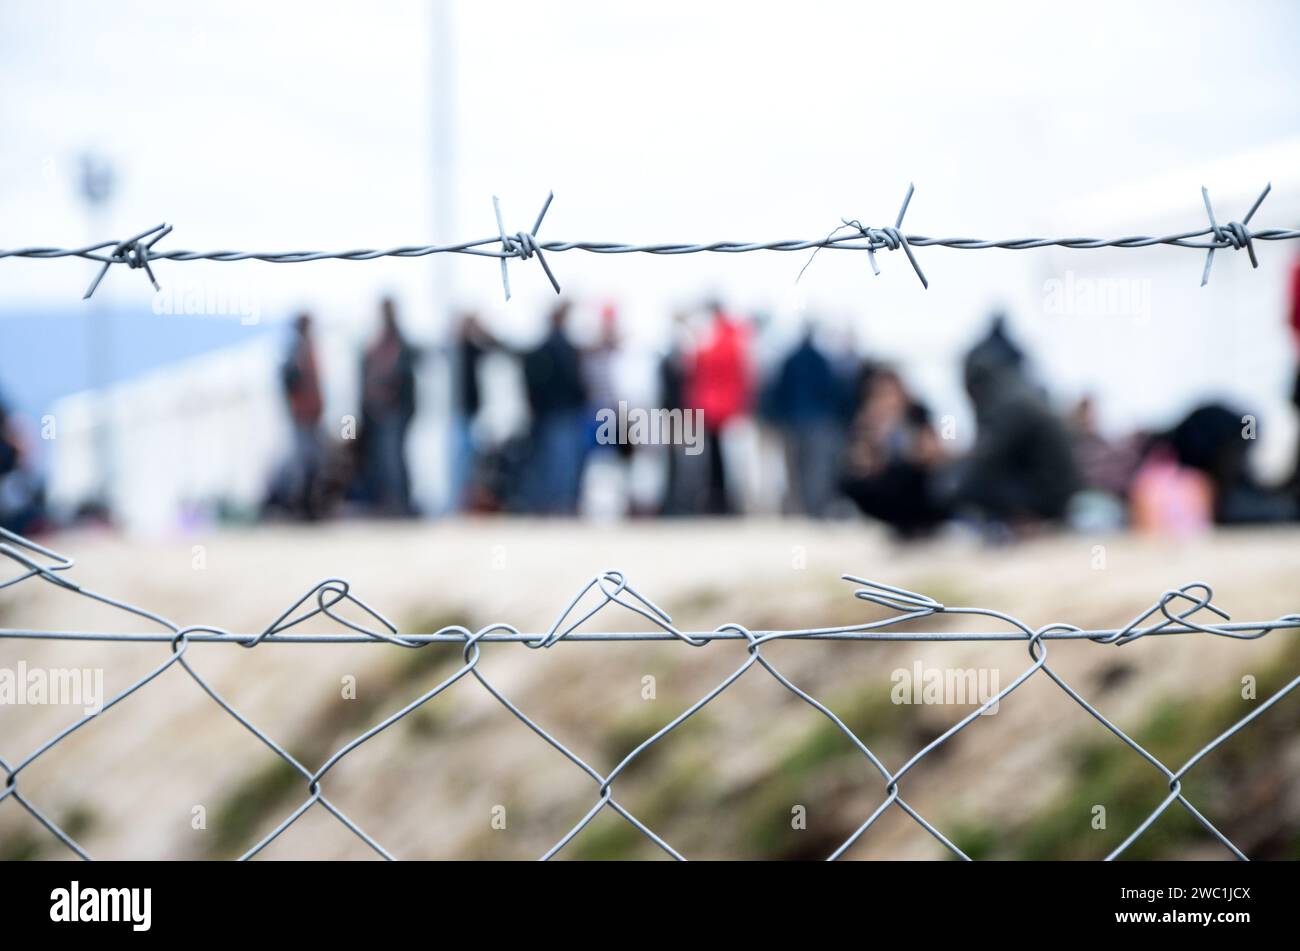 Stacheldraht im Flüchtlingslager. Migranten hinter Maschendrahtzaun im Lager. Eine Gruppe von Leuten hinter dem Zaun. Das Konzept von Gefängnis, Freiheit, Barriere, Migration. Stockfoto